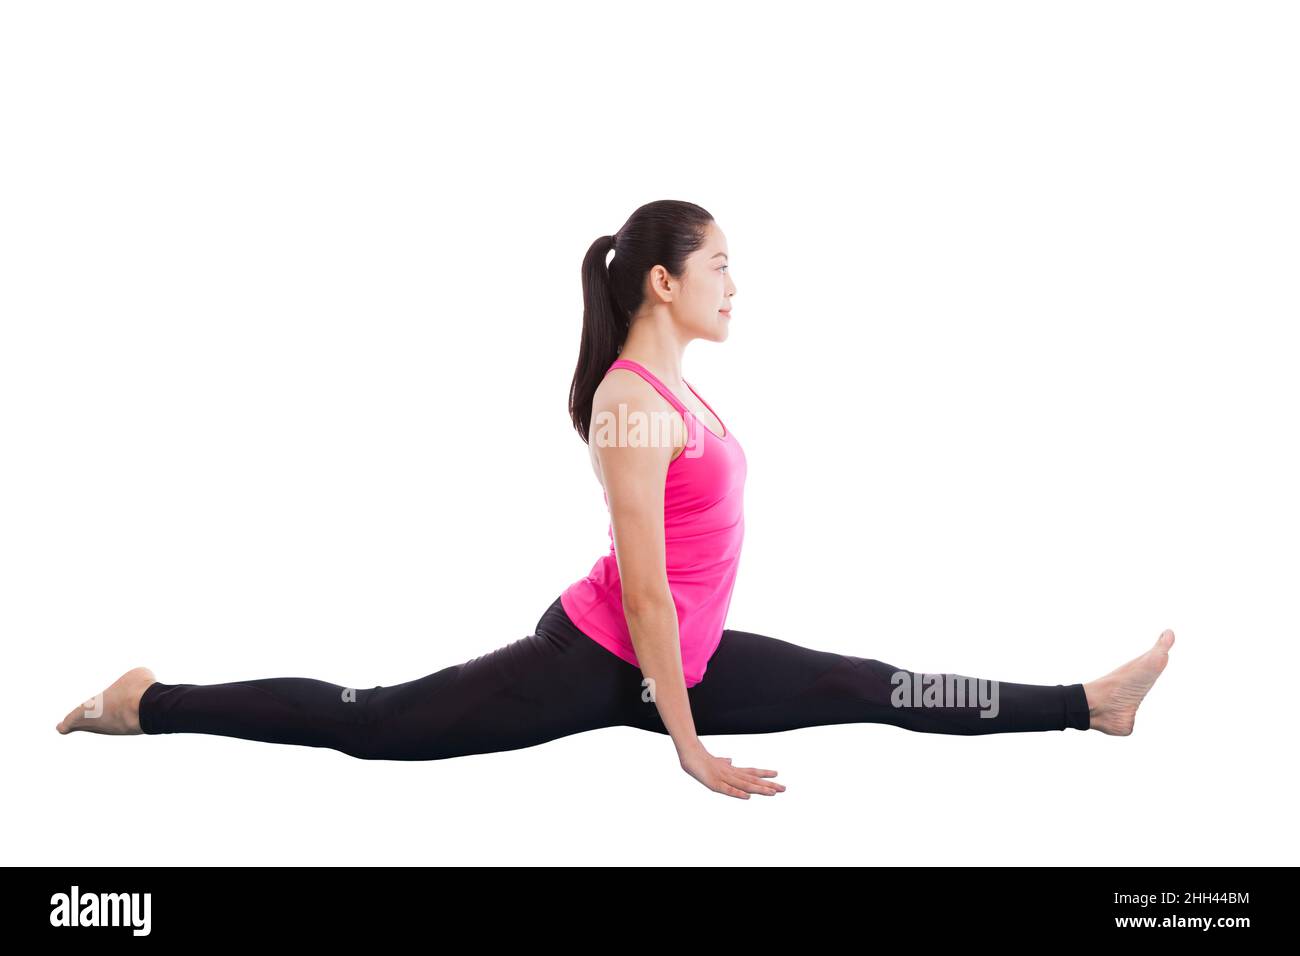 Mujer asiática que practica yoga, ejercicio llamado pose de mono, aislado sobre blanco Foto de stock